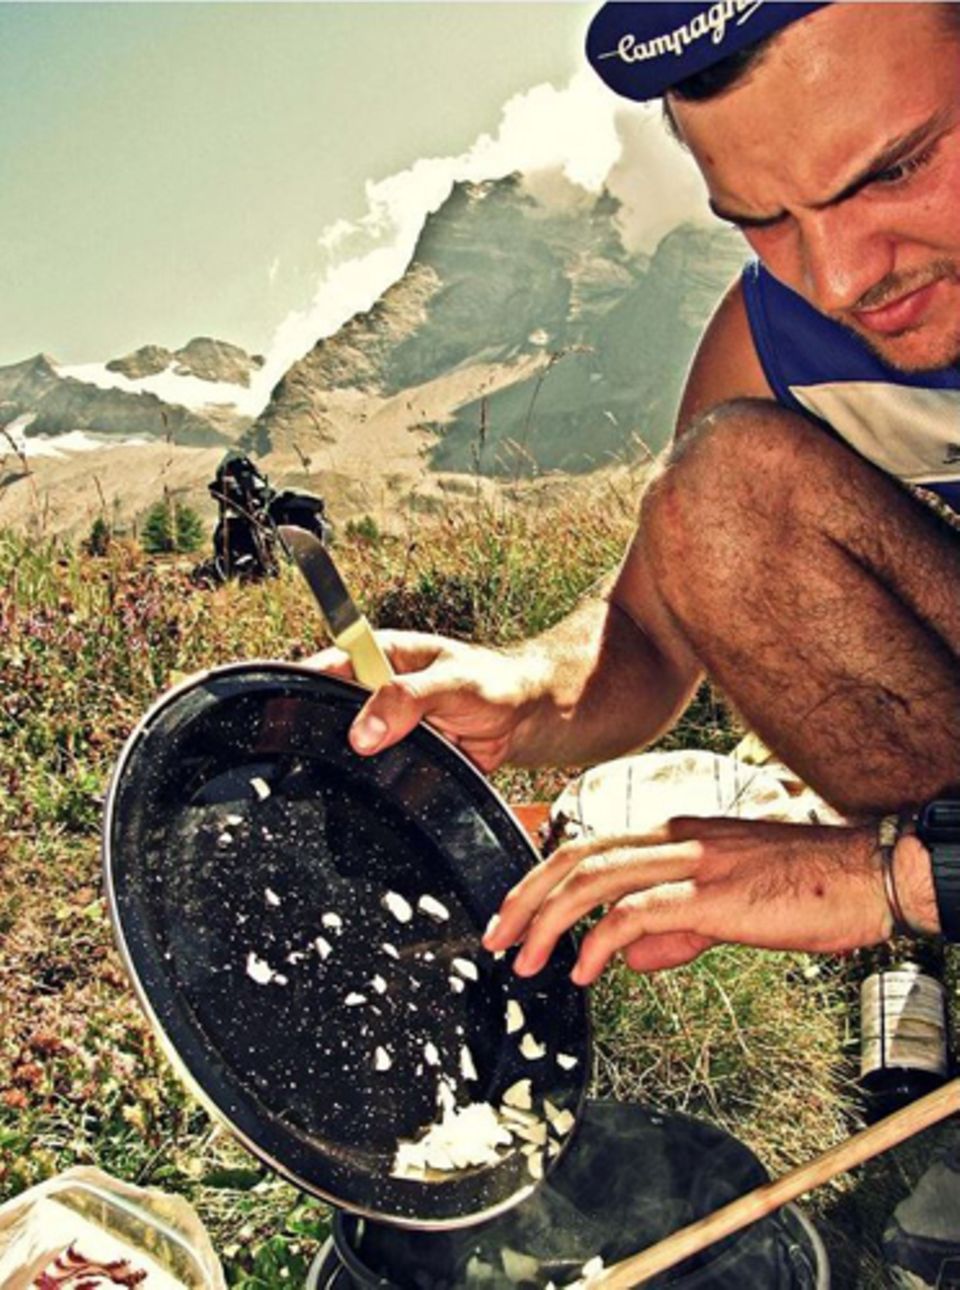 Die Alpen sind buchstäblich der erste Höhepunkt der Radtour. Tom und Matt quälen sich mit ihren schwer beladenen Rädern die Bergpässe hinauf. Oben wartet die Belohnung: ein selbstgekochtes Essen, zubereitet auf dem Campingkocher.